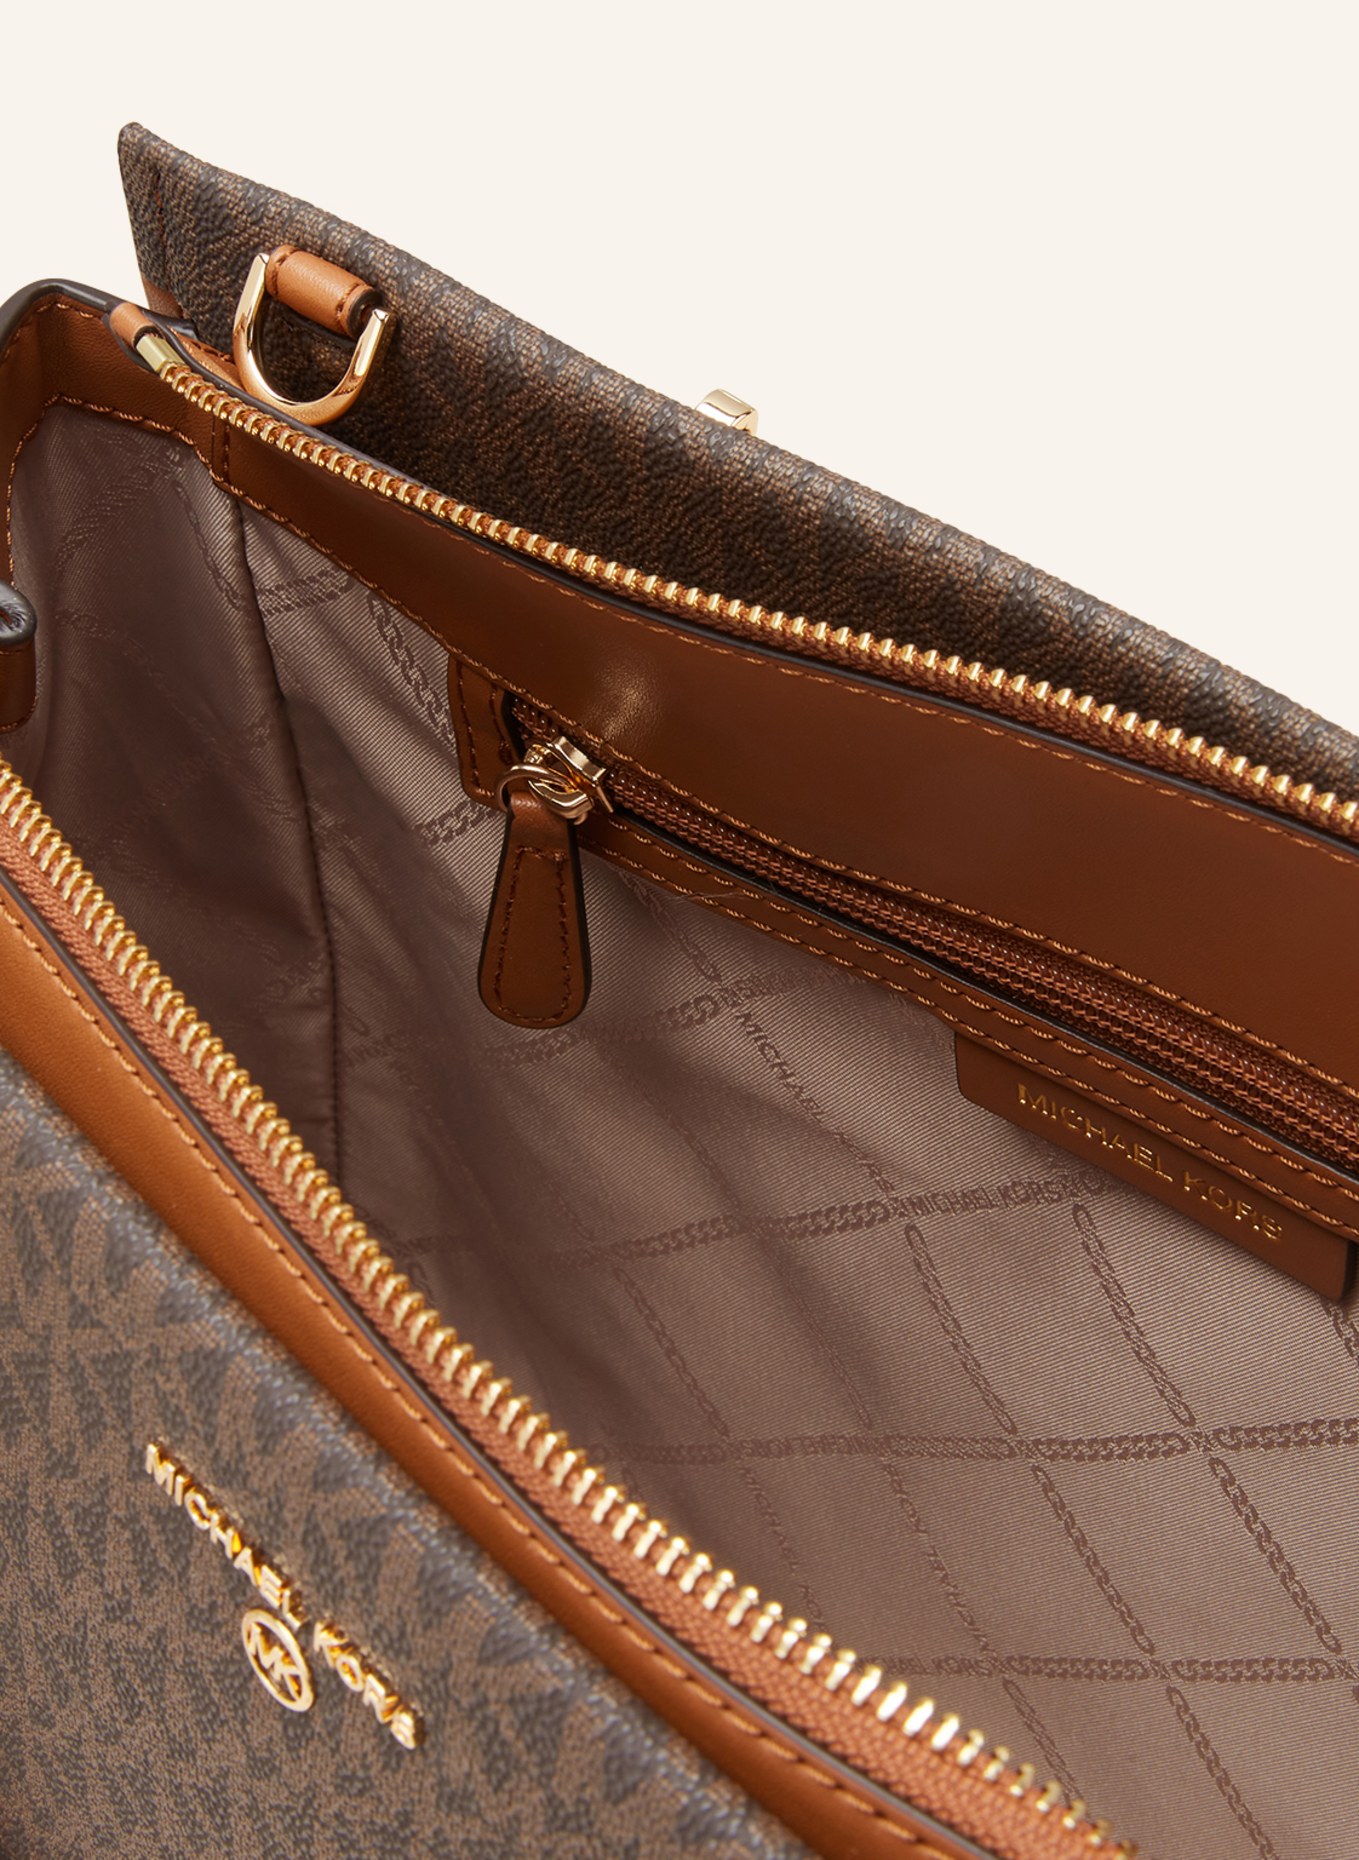 MICHAEL KORS Handtasche MARILYN MEDIUM, Farbe: 252 BRN/ACORN (Bild 3)